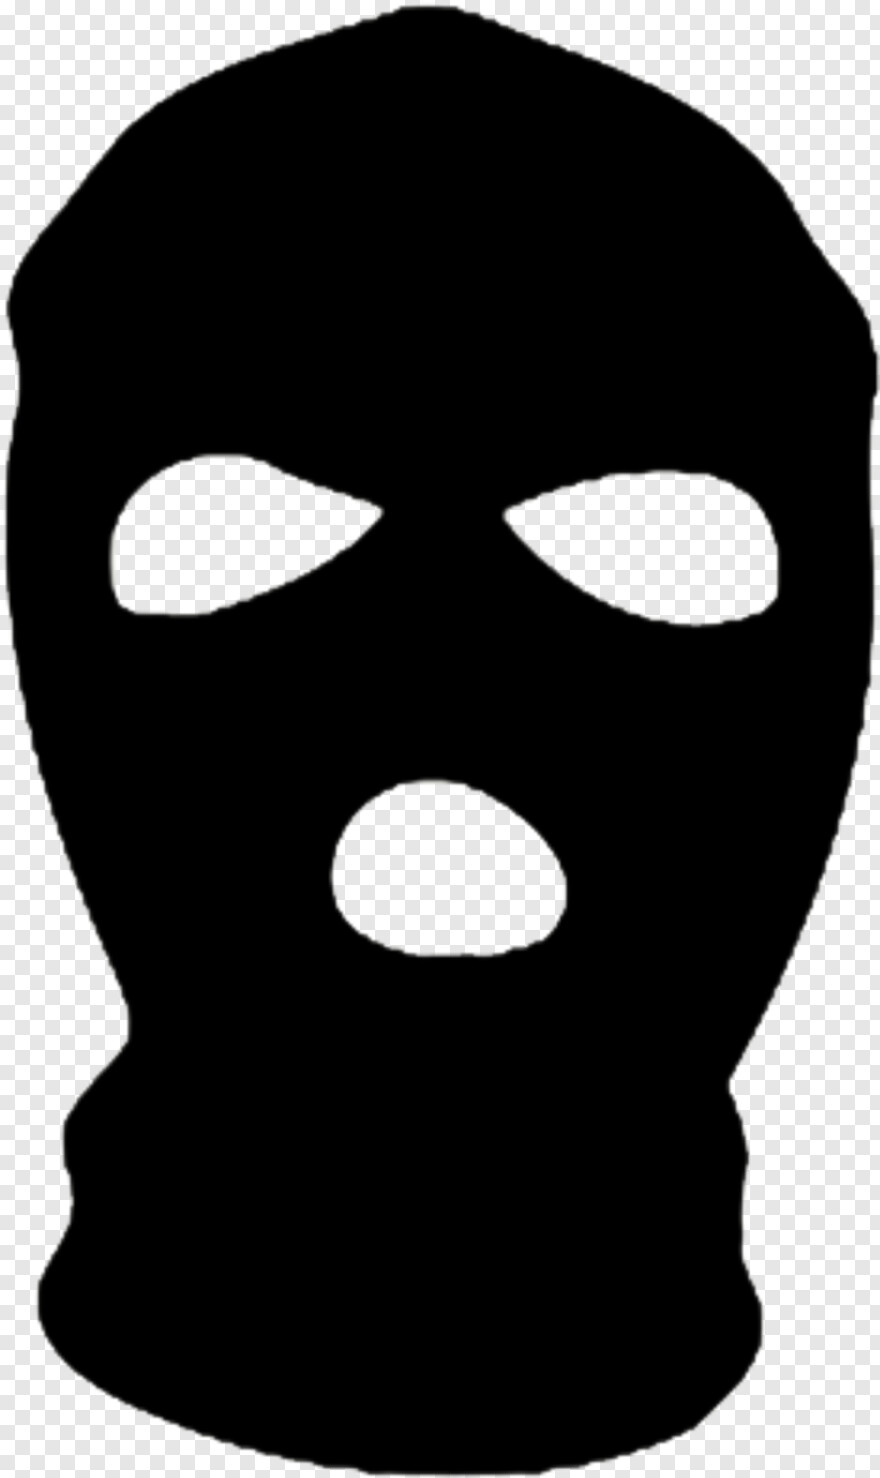  Guy Fawkes Mask, Spiderman Mask, Anonymous Mask, Mardi Gras Mask, Superhero Mask, Jason Mask